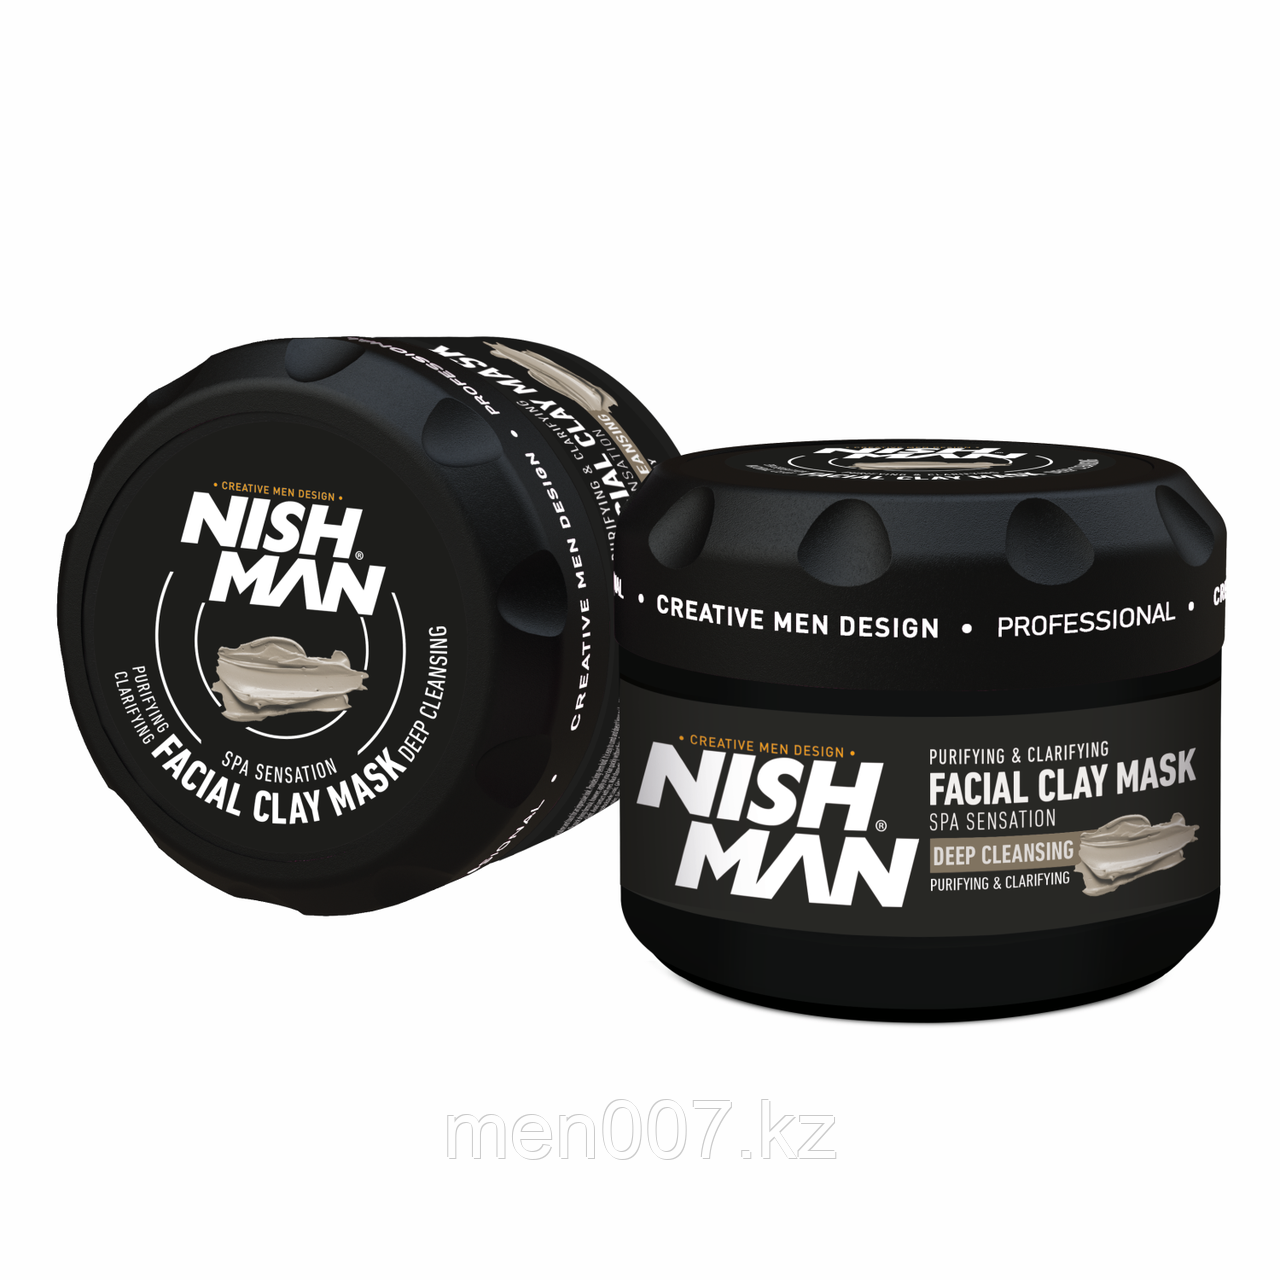 NISHMAN Spa Facial Clay Kaolin Mask 450 г каолиновая маска для лица